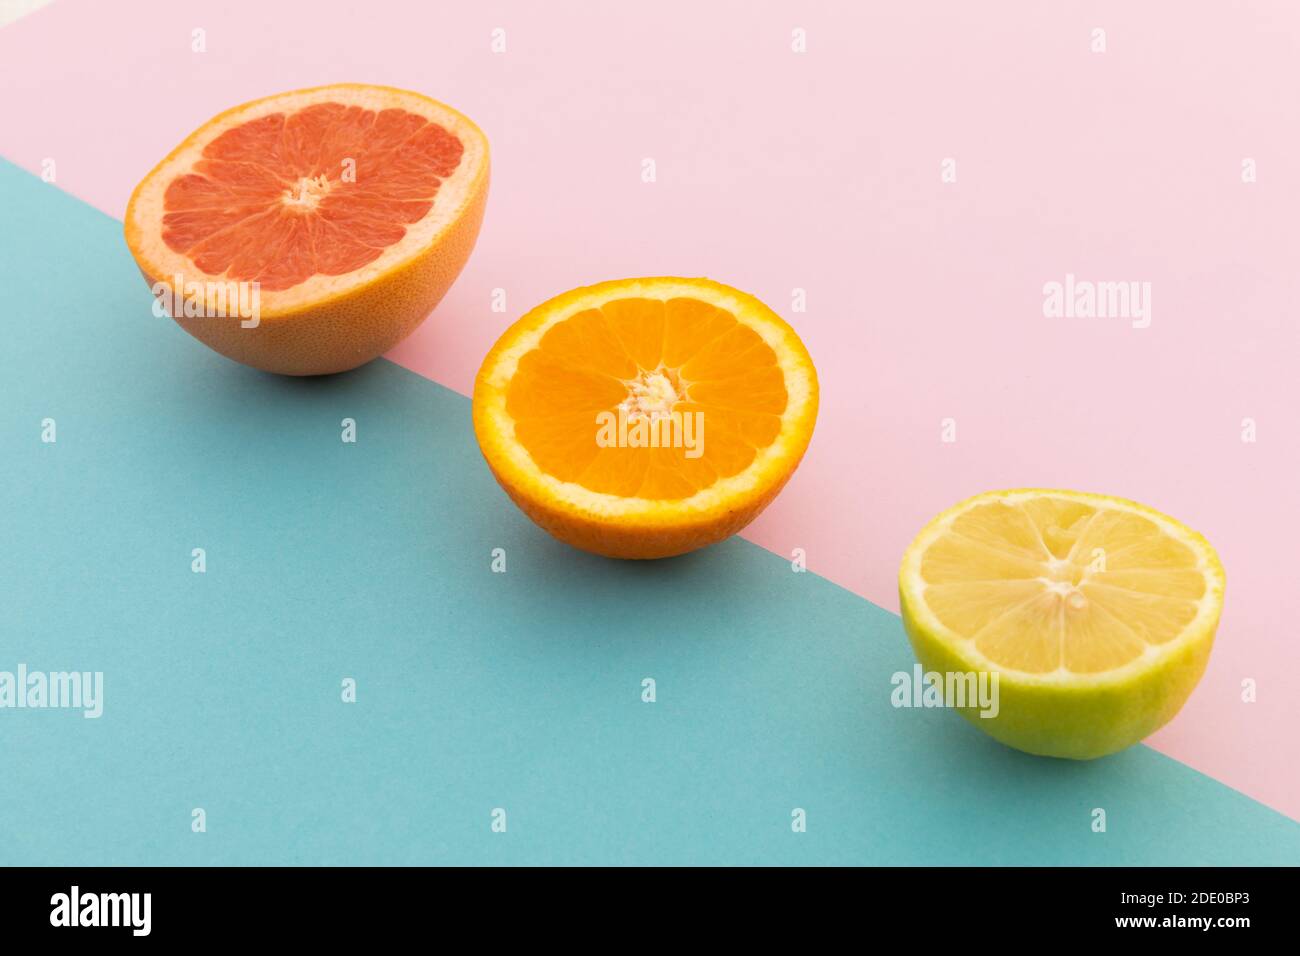 Pompelmo, arancia e limone su sfondo rosa e blu Foto Stock